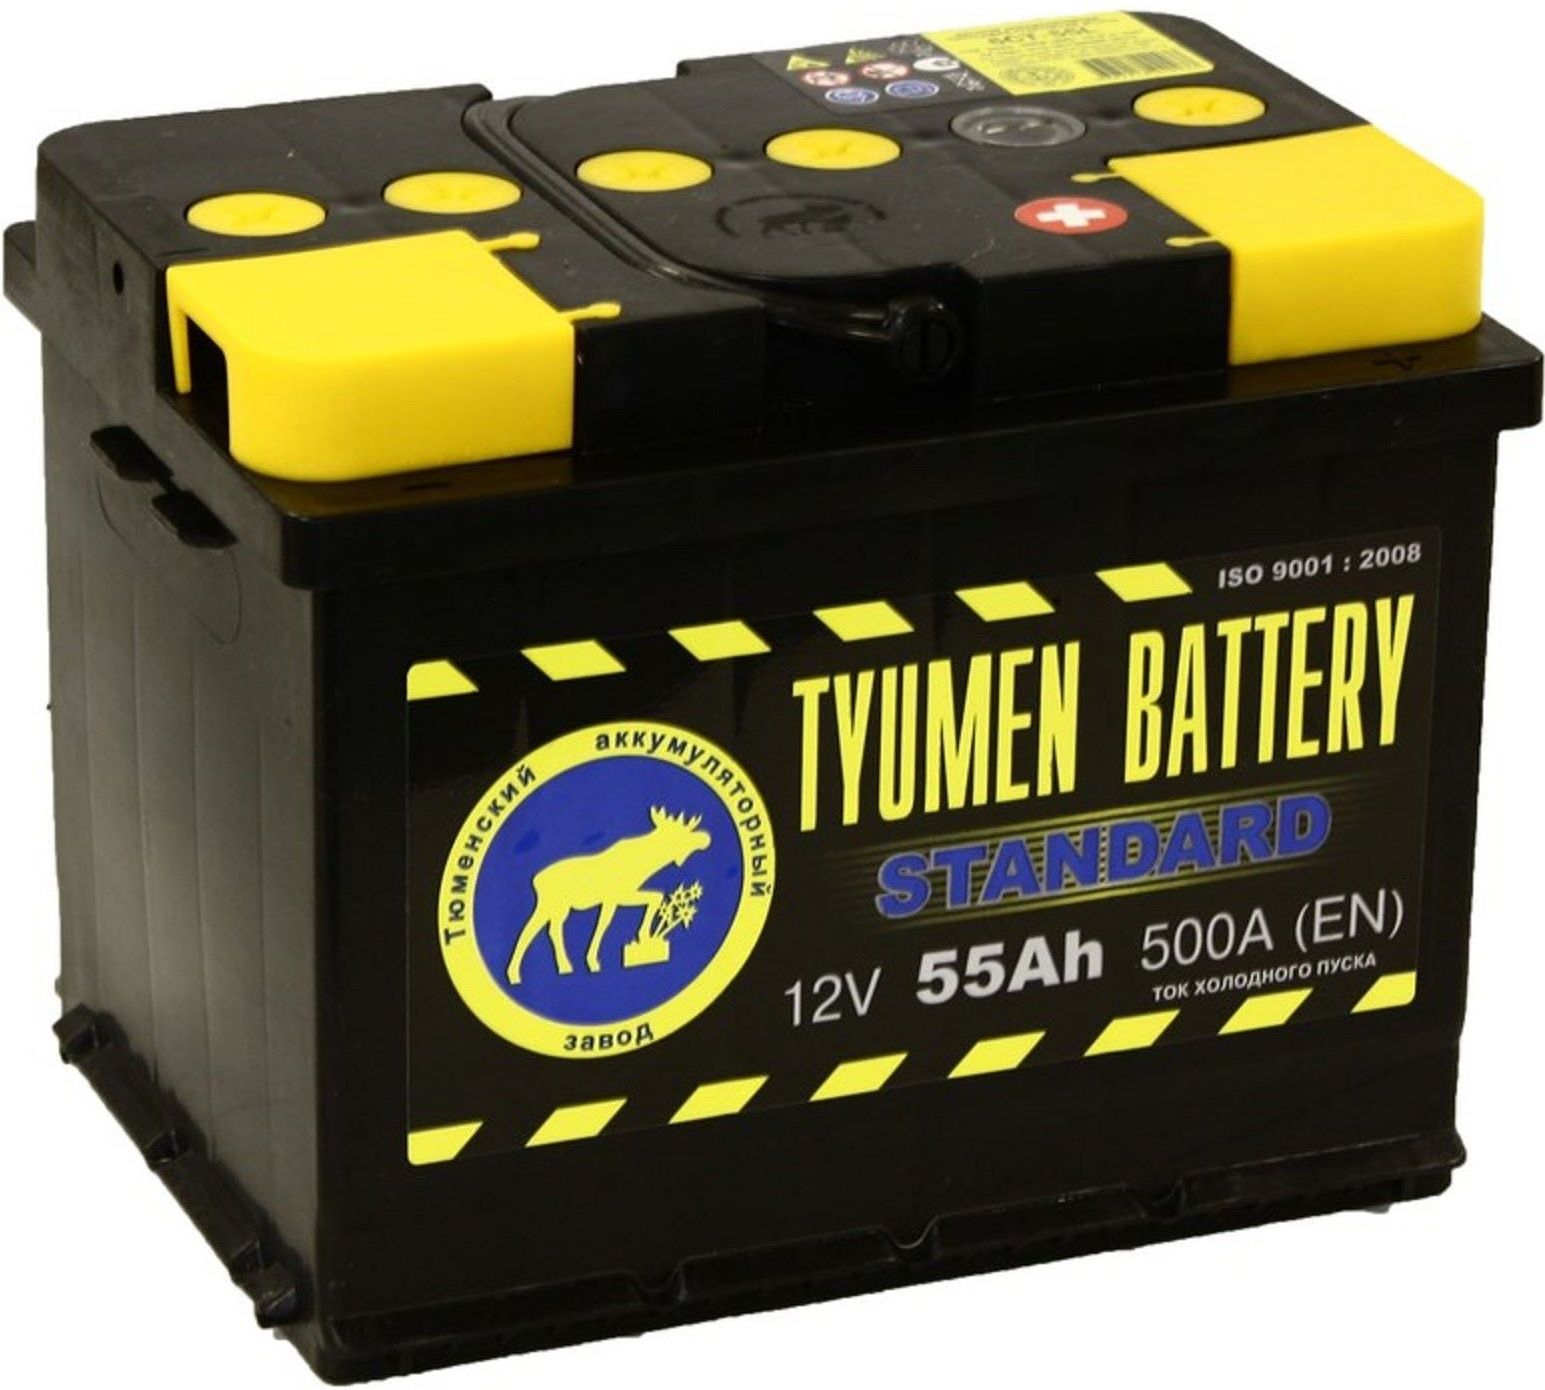 Дешевые аккумуляторы. Tyumen Battery Standard 62 Ач. 62 О.П. Tyumen Battery "Standard" 580а. Автомобильный аккумулятор Тюмень 6ct-60l 550а п.п.. Автомобильный аккумулятор Tyumen Battery Standard 6ст-62l 550а о.п..